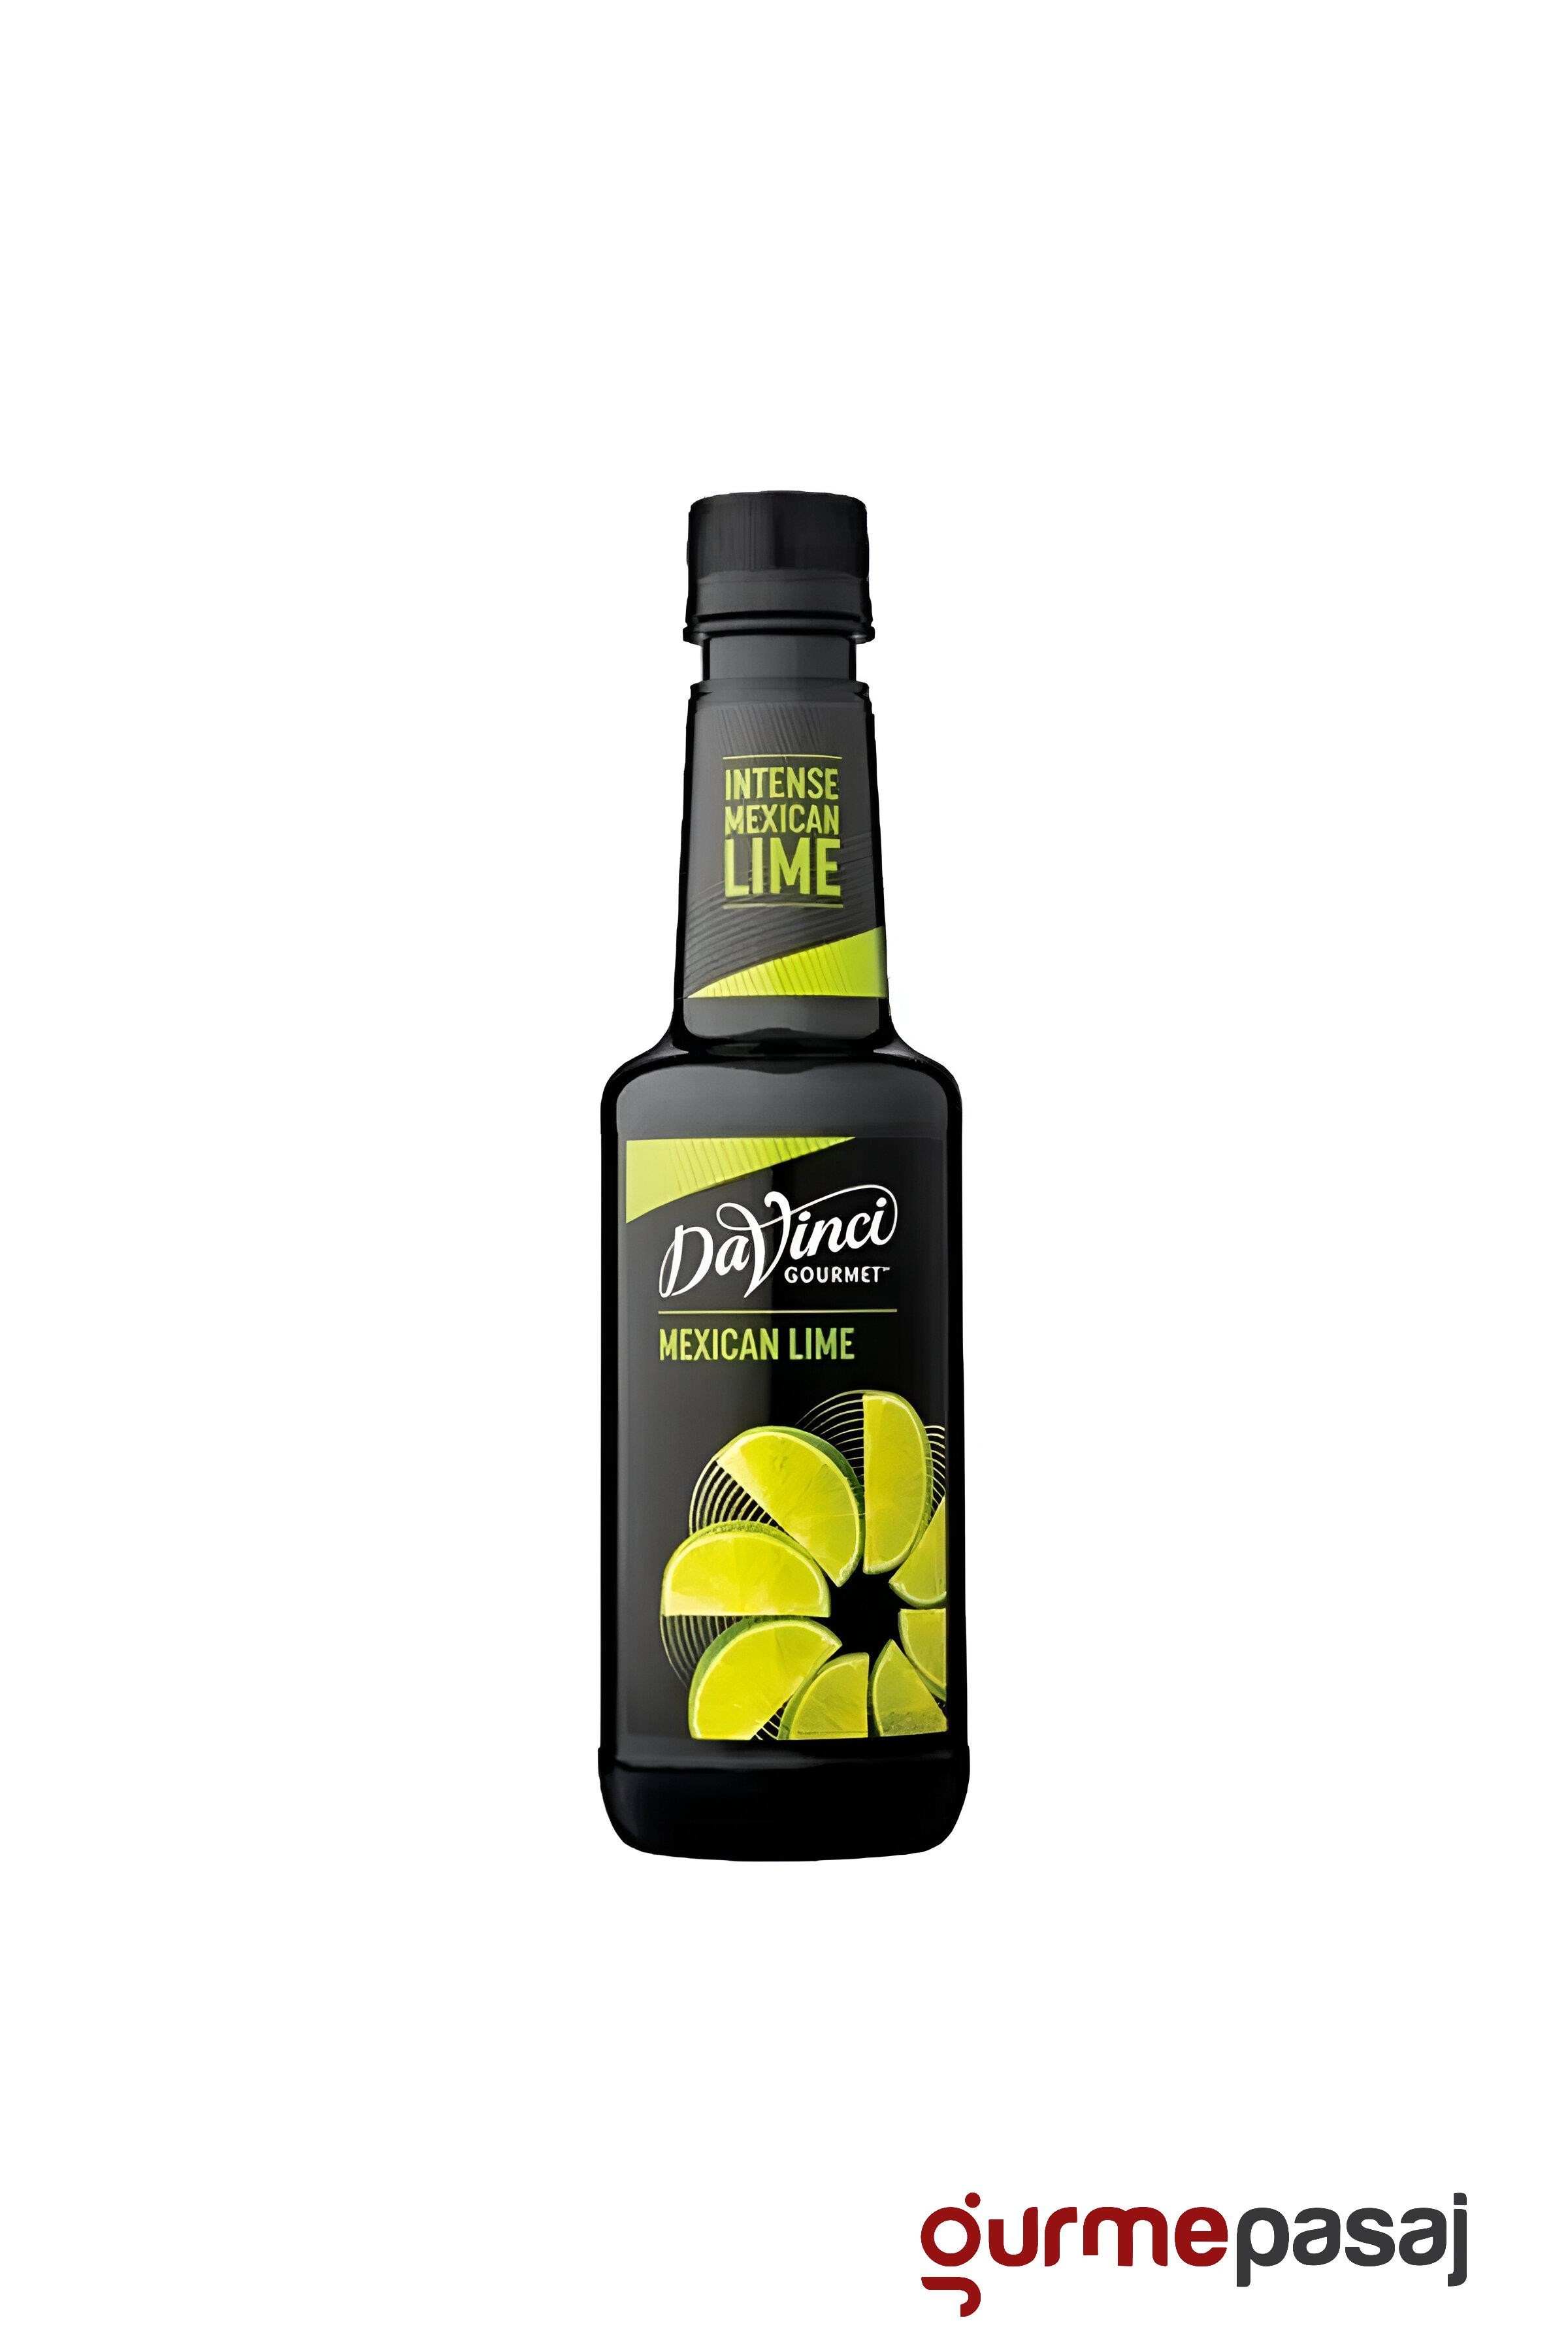 Da Vinci Misket Limonu Aroma Verici (Intense Mexican Lime) 375 ML